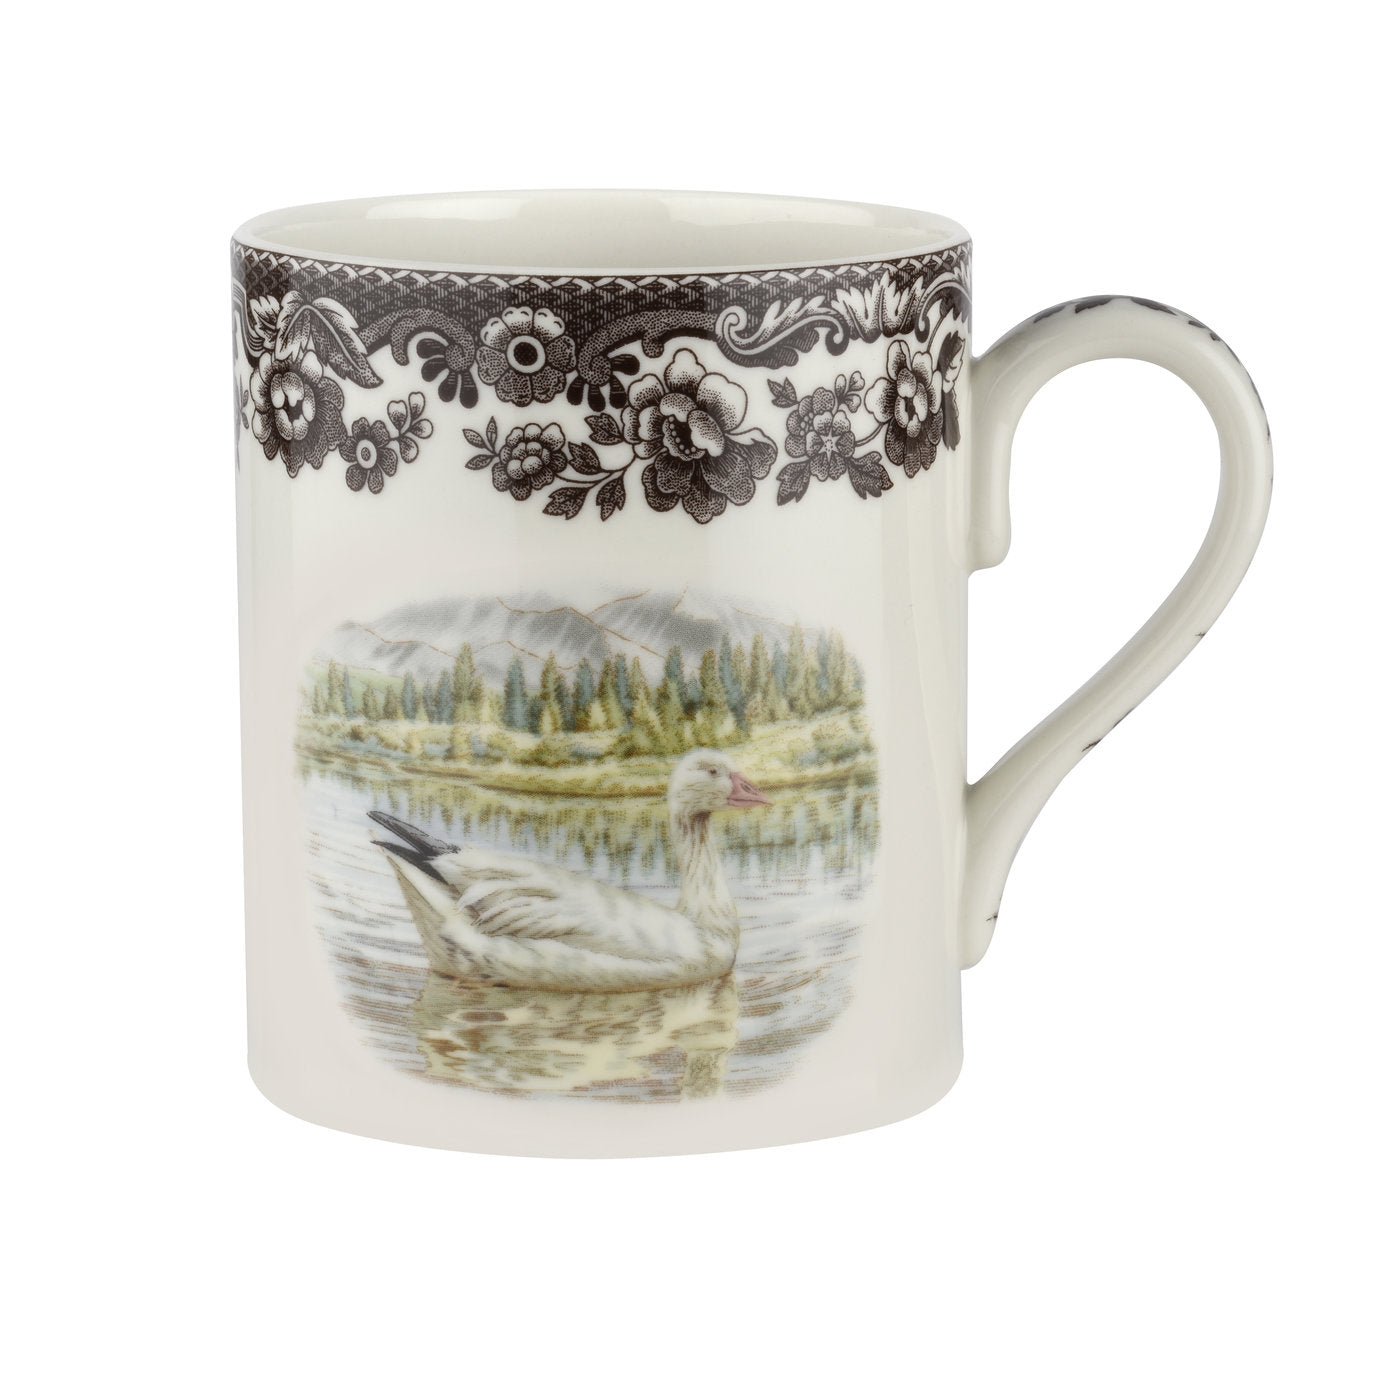 Spode Woodland Mug, Snow Goose